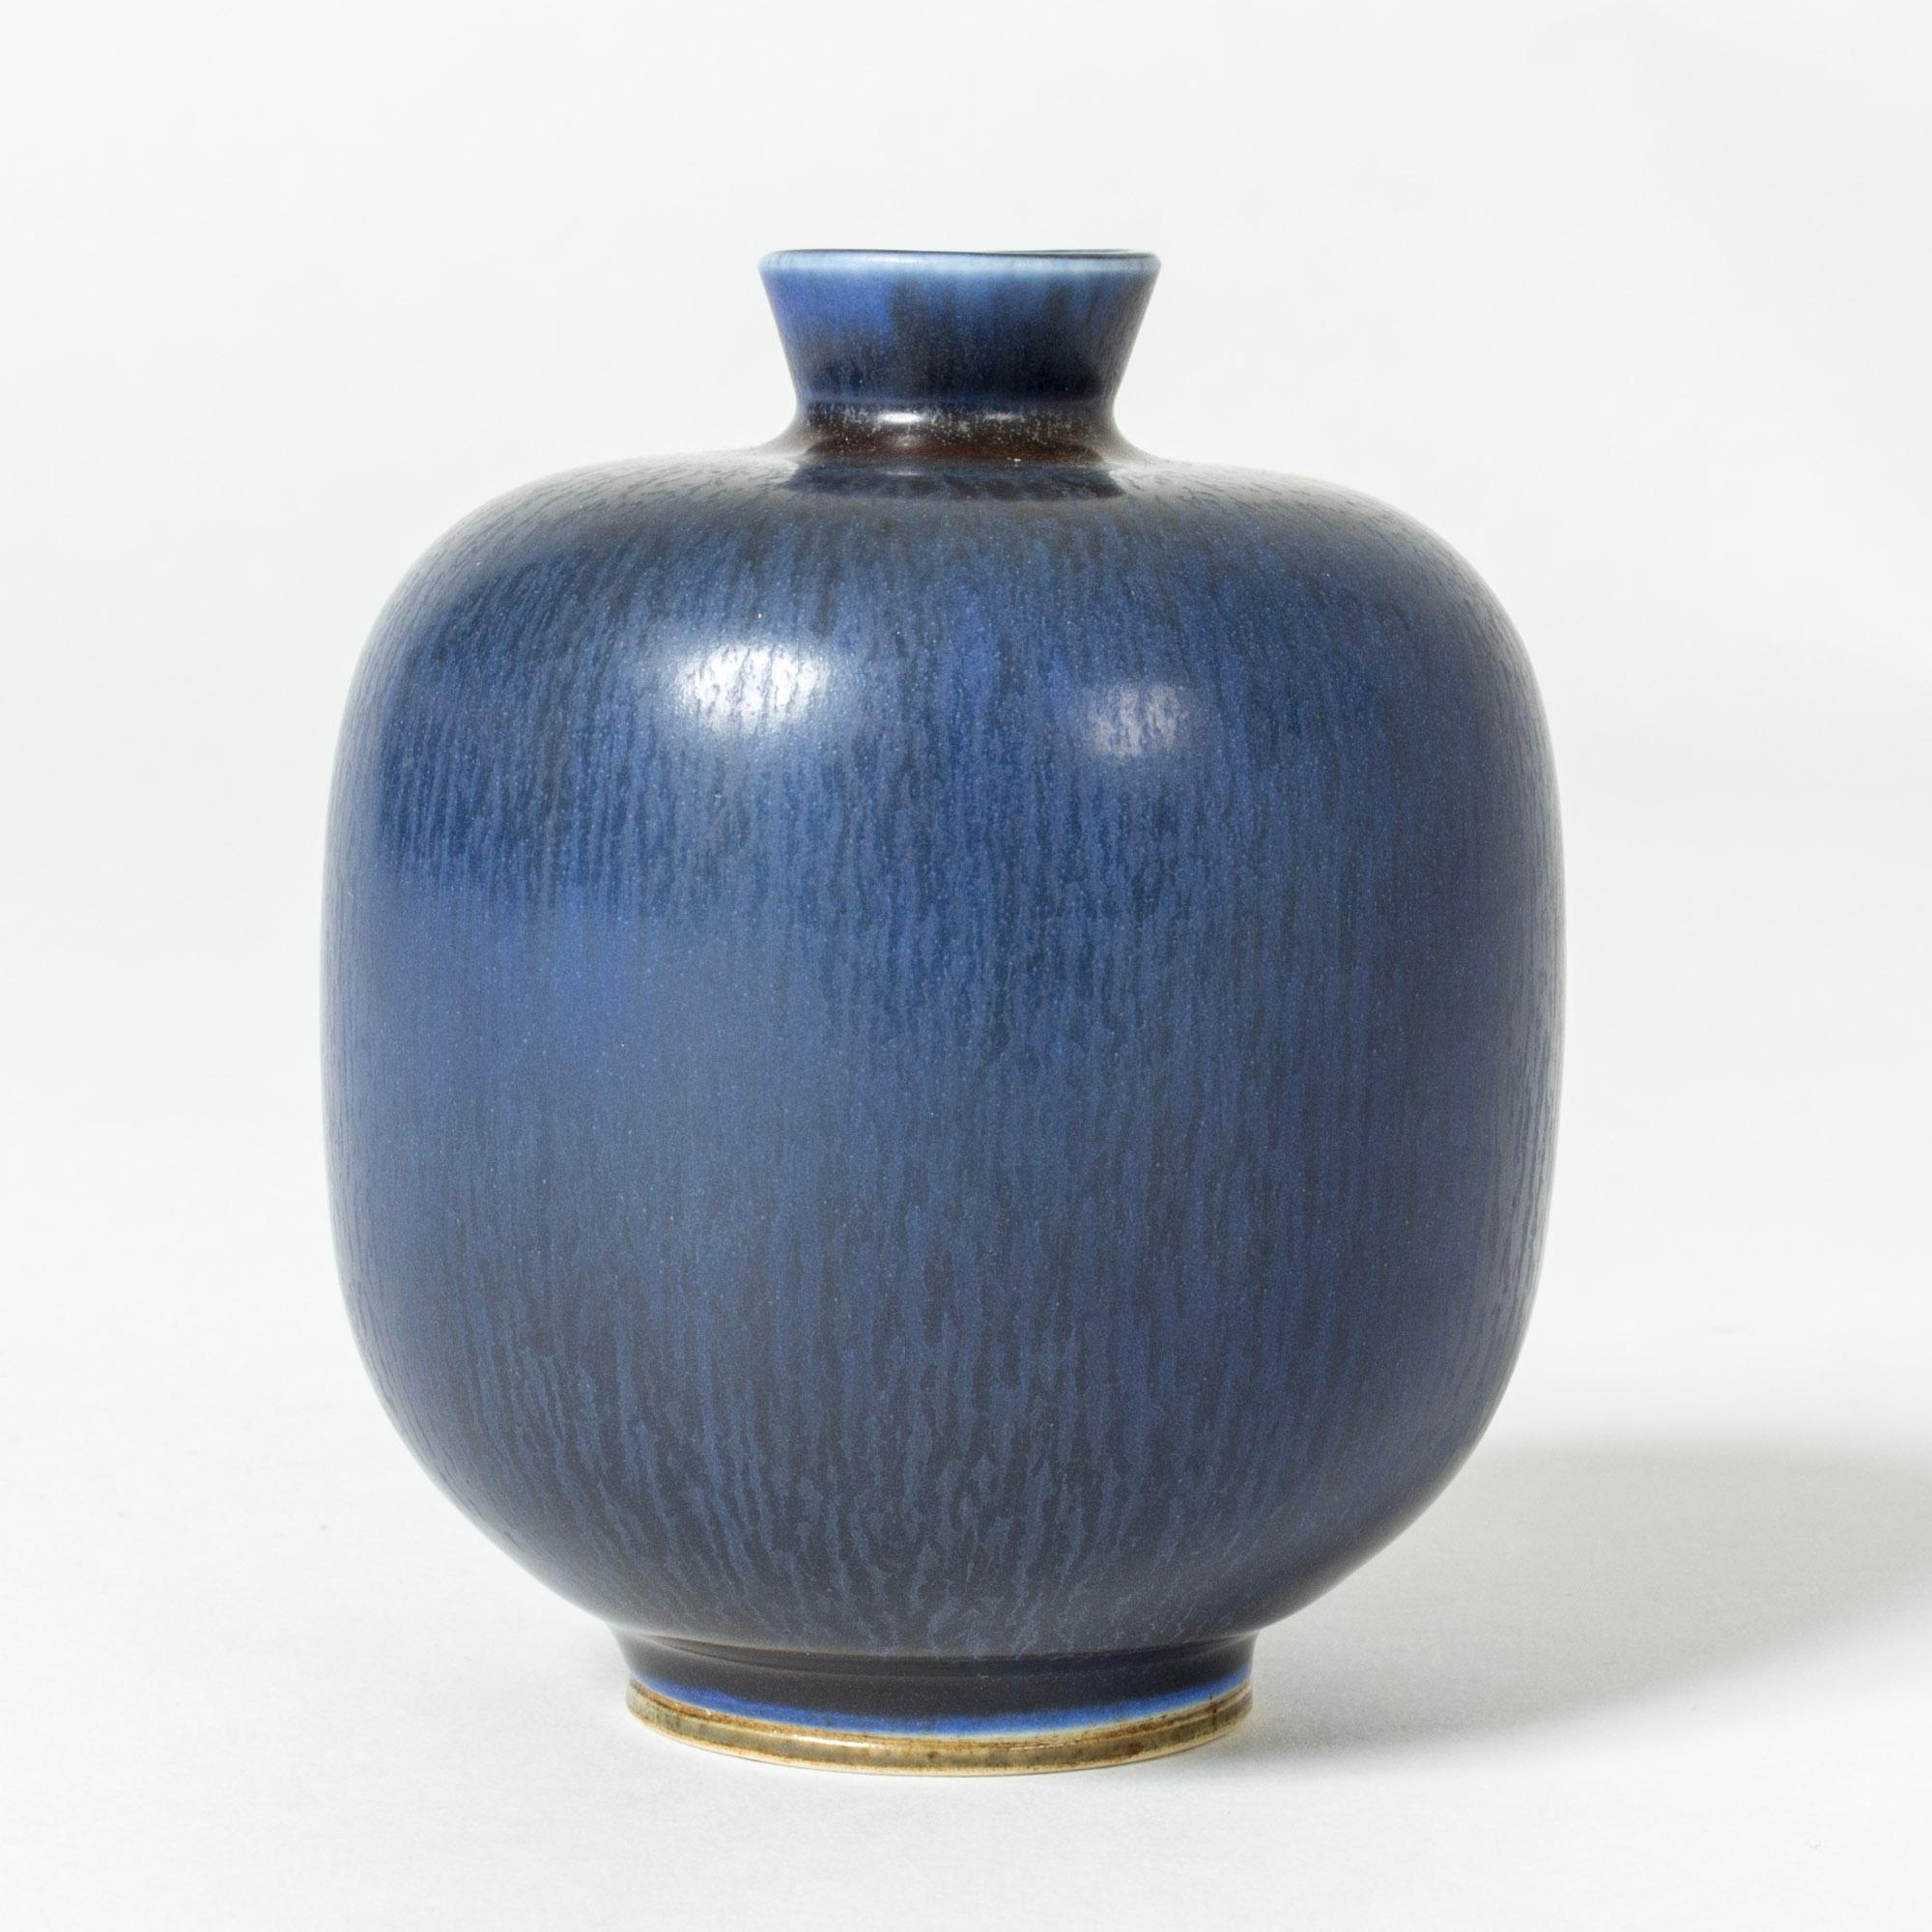 Petit vase en grès de Berndt Eleg, de forme robuste avec une élégante glaçure bleue en forme de fourrure de lièvre.

Berndt Friberg était un céramiste suédois, renommé pour ses vases en grès et ses récipients pour Gustavsberg. Ses créations pures et